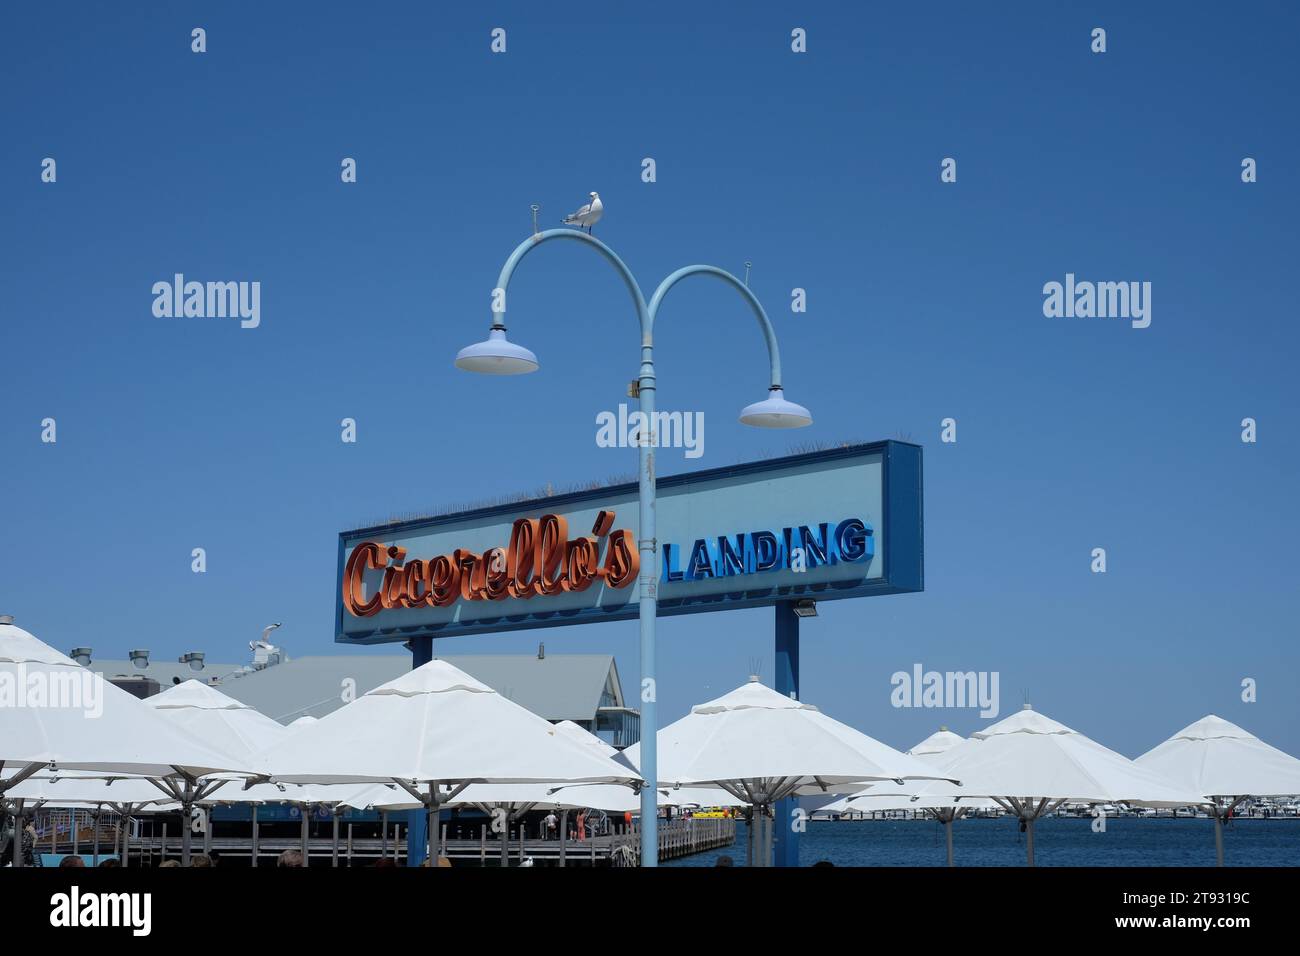 Une mouette sur une double arche deux lampadaires, signe du restaurant Cicerello's Landing, bleu avec éclaboussure de rouge contre un ciel bleu Fremantle, Australie Banque D'Images